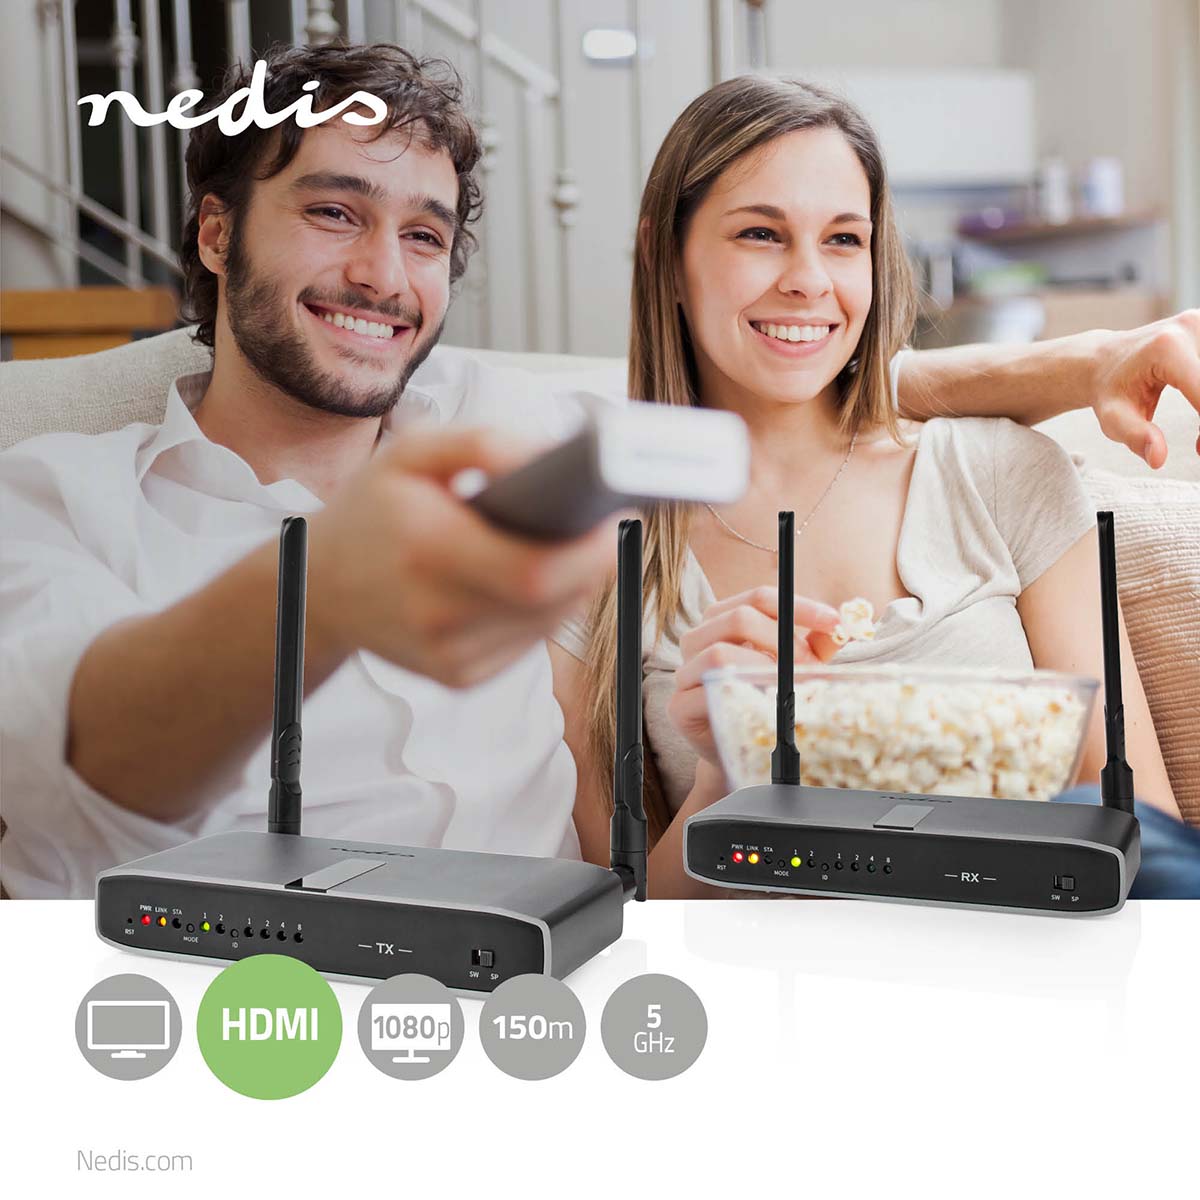 Wireless HDMI ™ Übertrager | WLAN | 5.15 - 5.85 MHz | 100.0 m (Sichtlinie) | Maximale Auflösung: Full HD 1080p | 6.75 Gbps | IR-Rücksendefunktion | ABS | Anthrazit